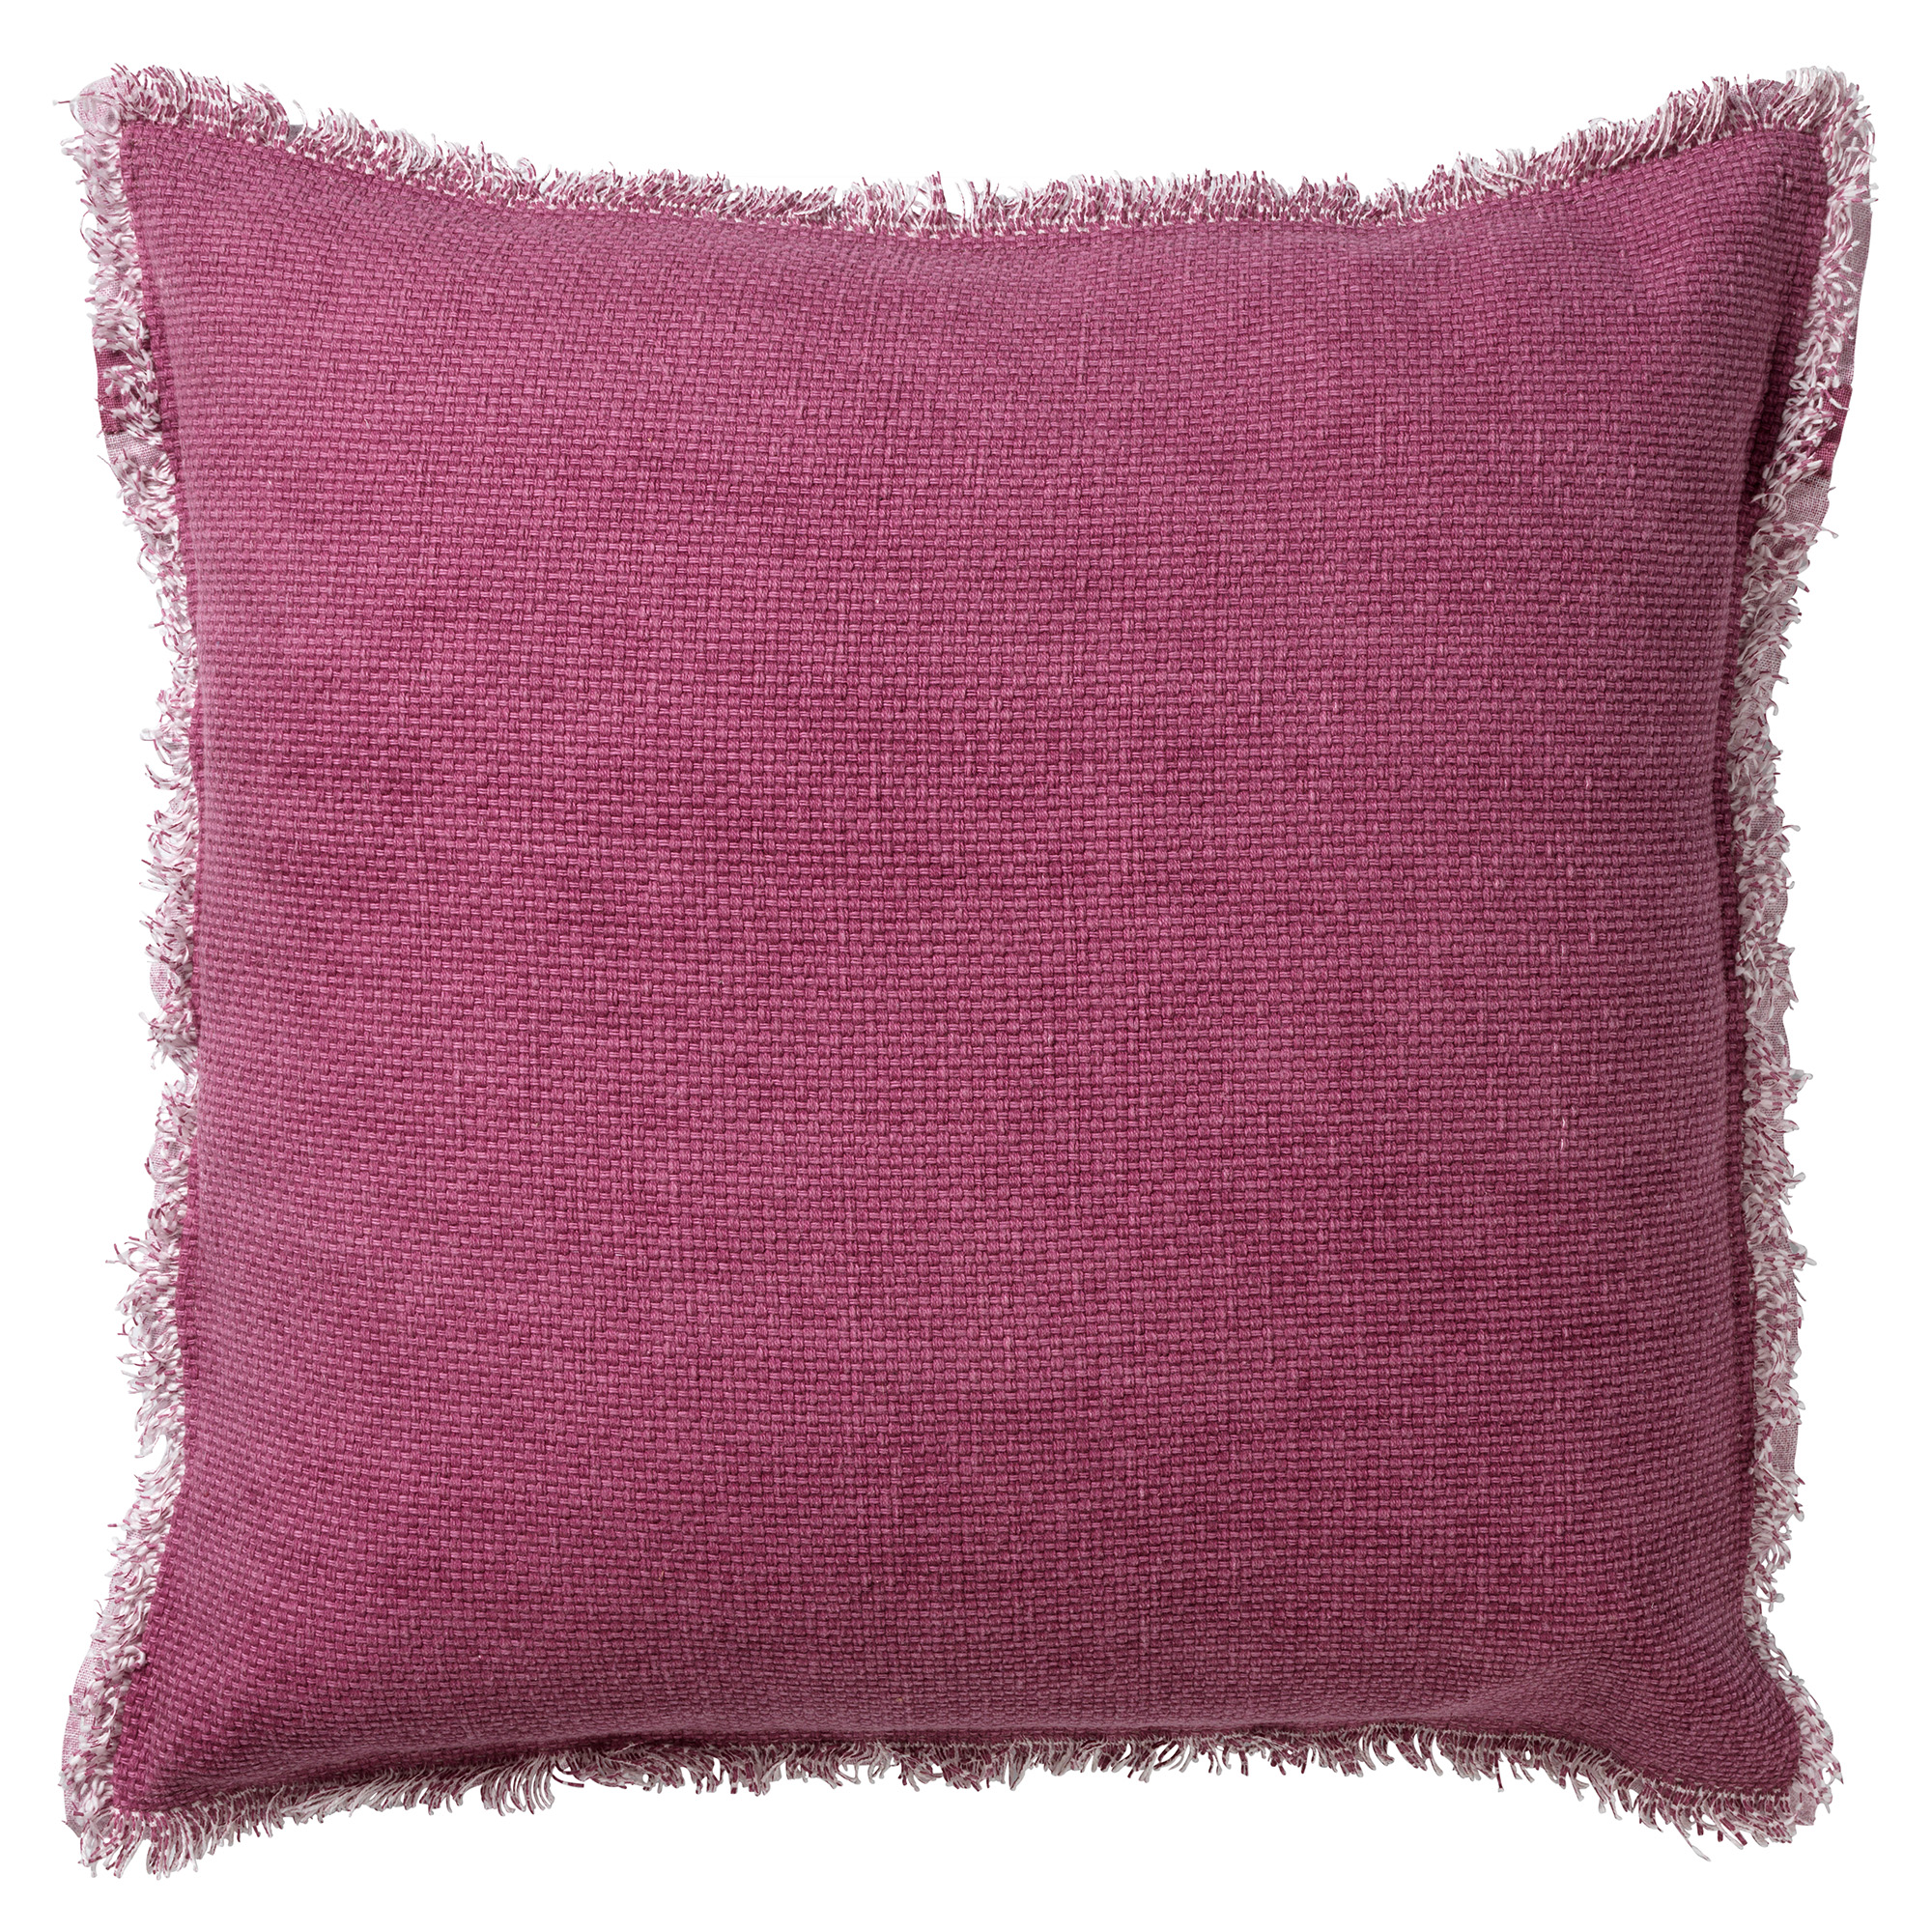 BURTO - Sierkussen 60x60 cm - gewassen katoen - Heather Rose - roze